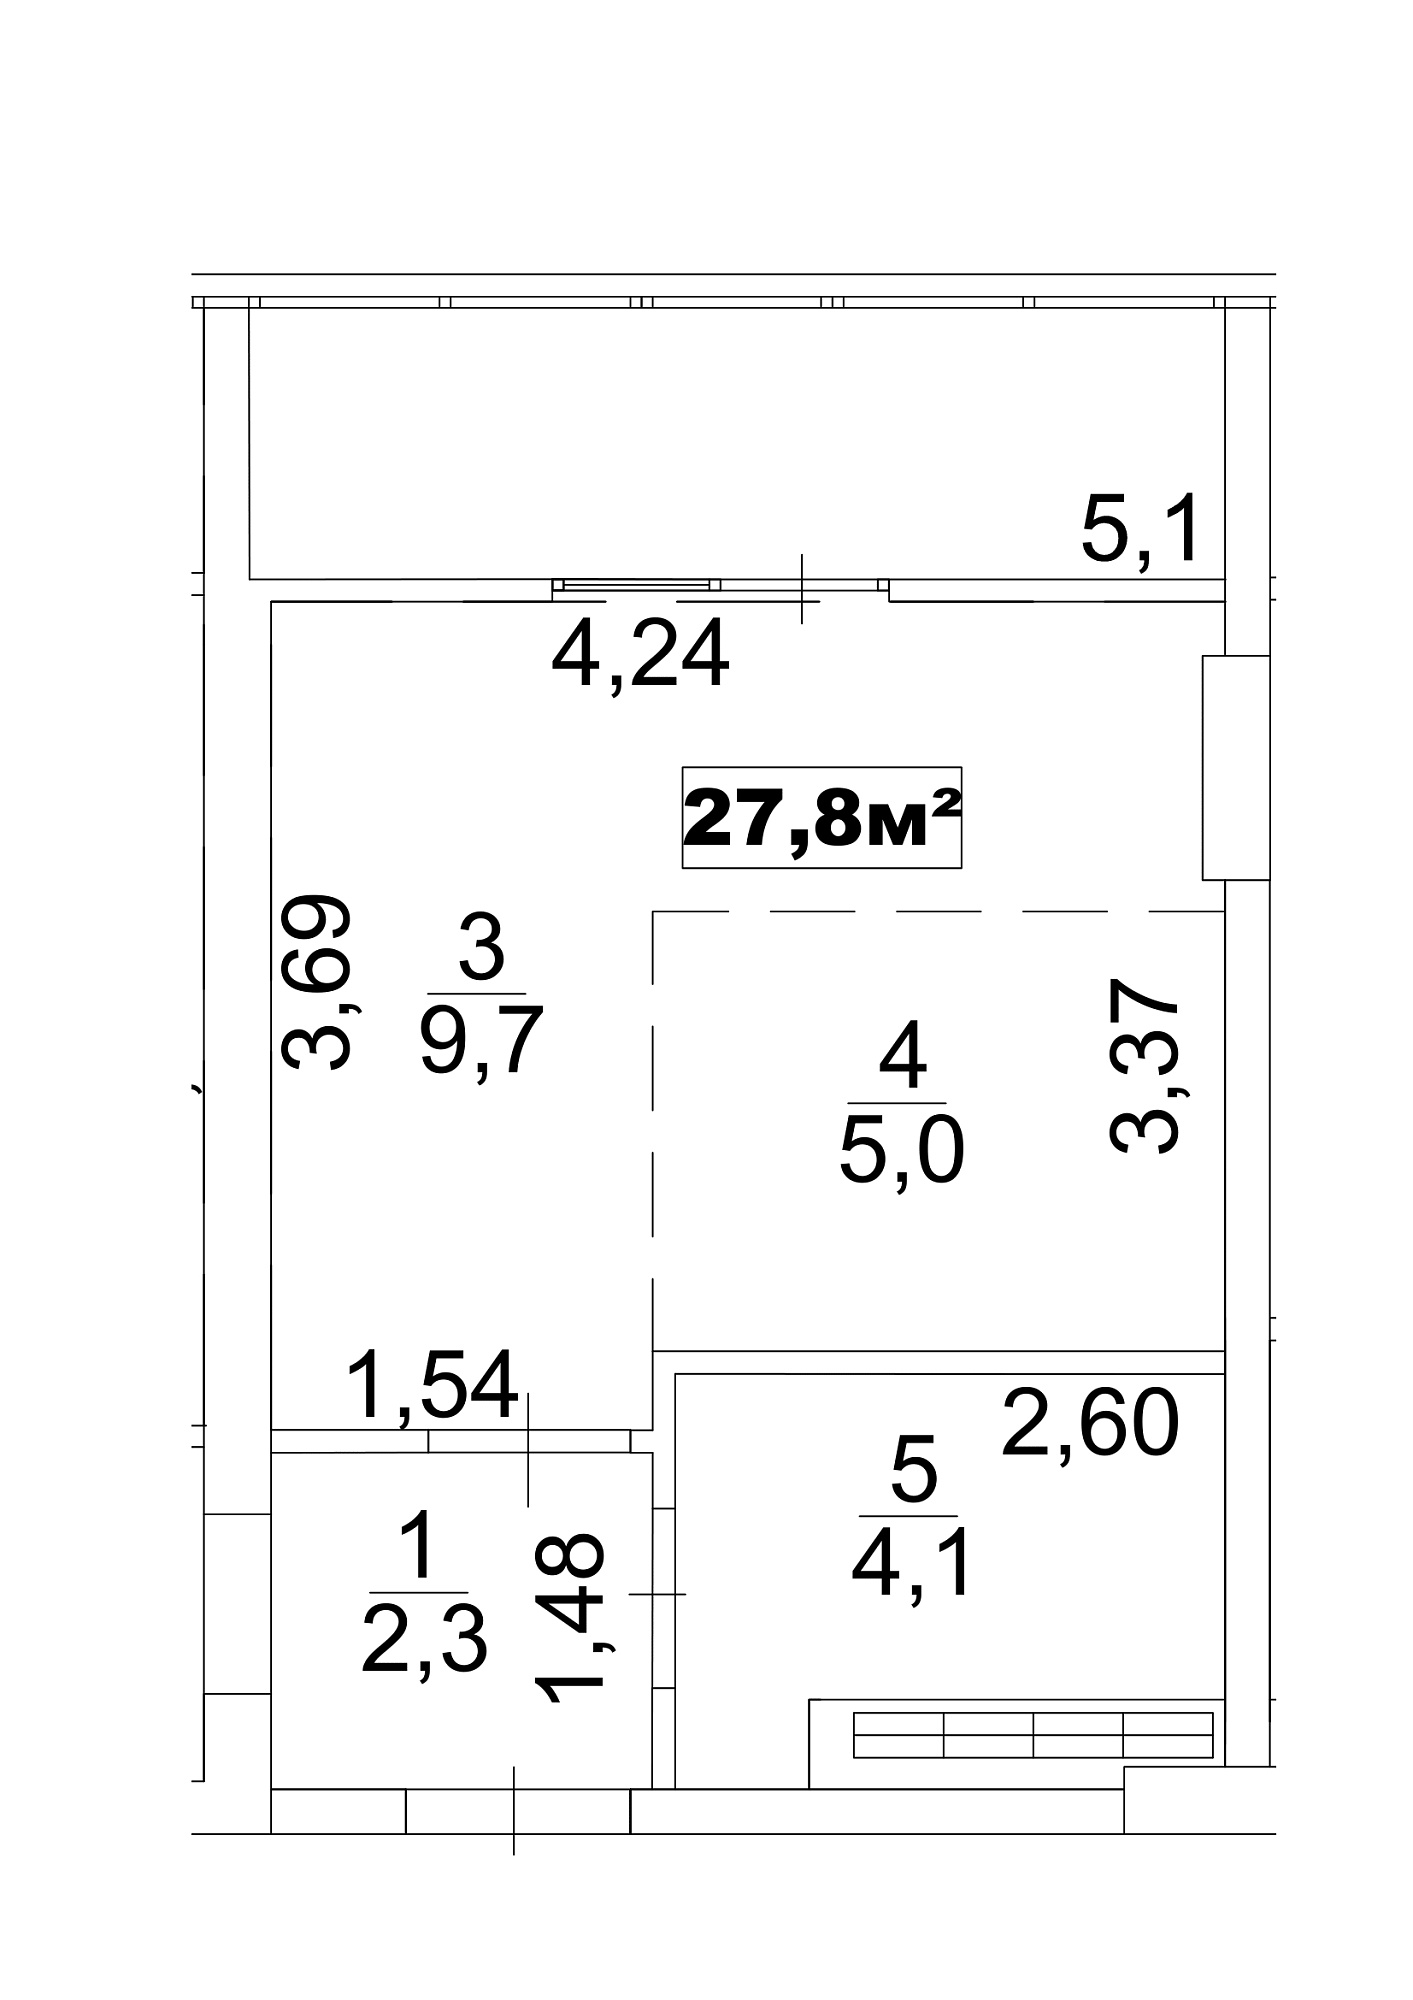 Планування Smart-квартира площею 27.8м2, AB-13-03/0018в.